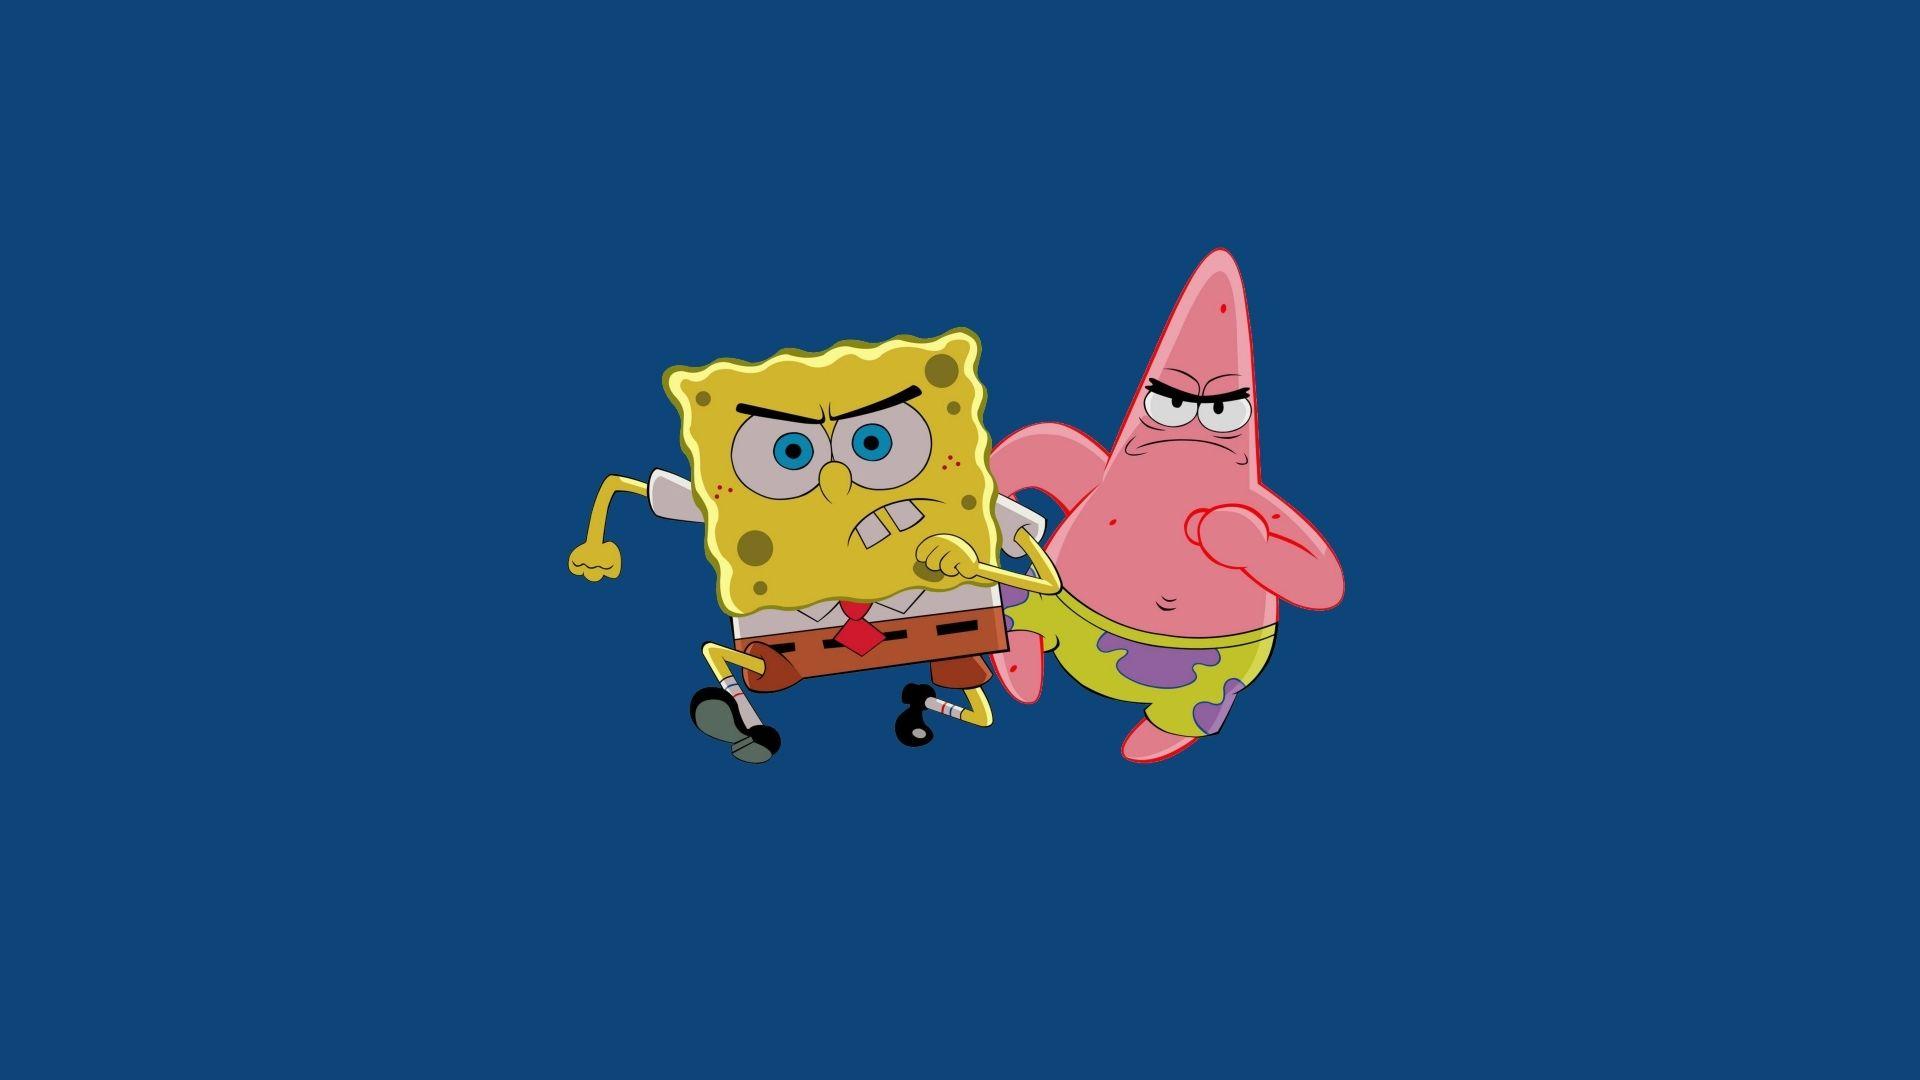 SpongeBob and Patrick simple wallpaper wallpaper download